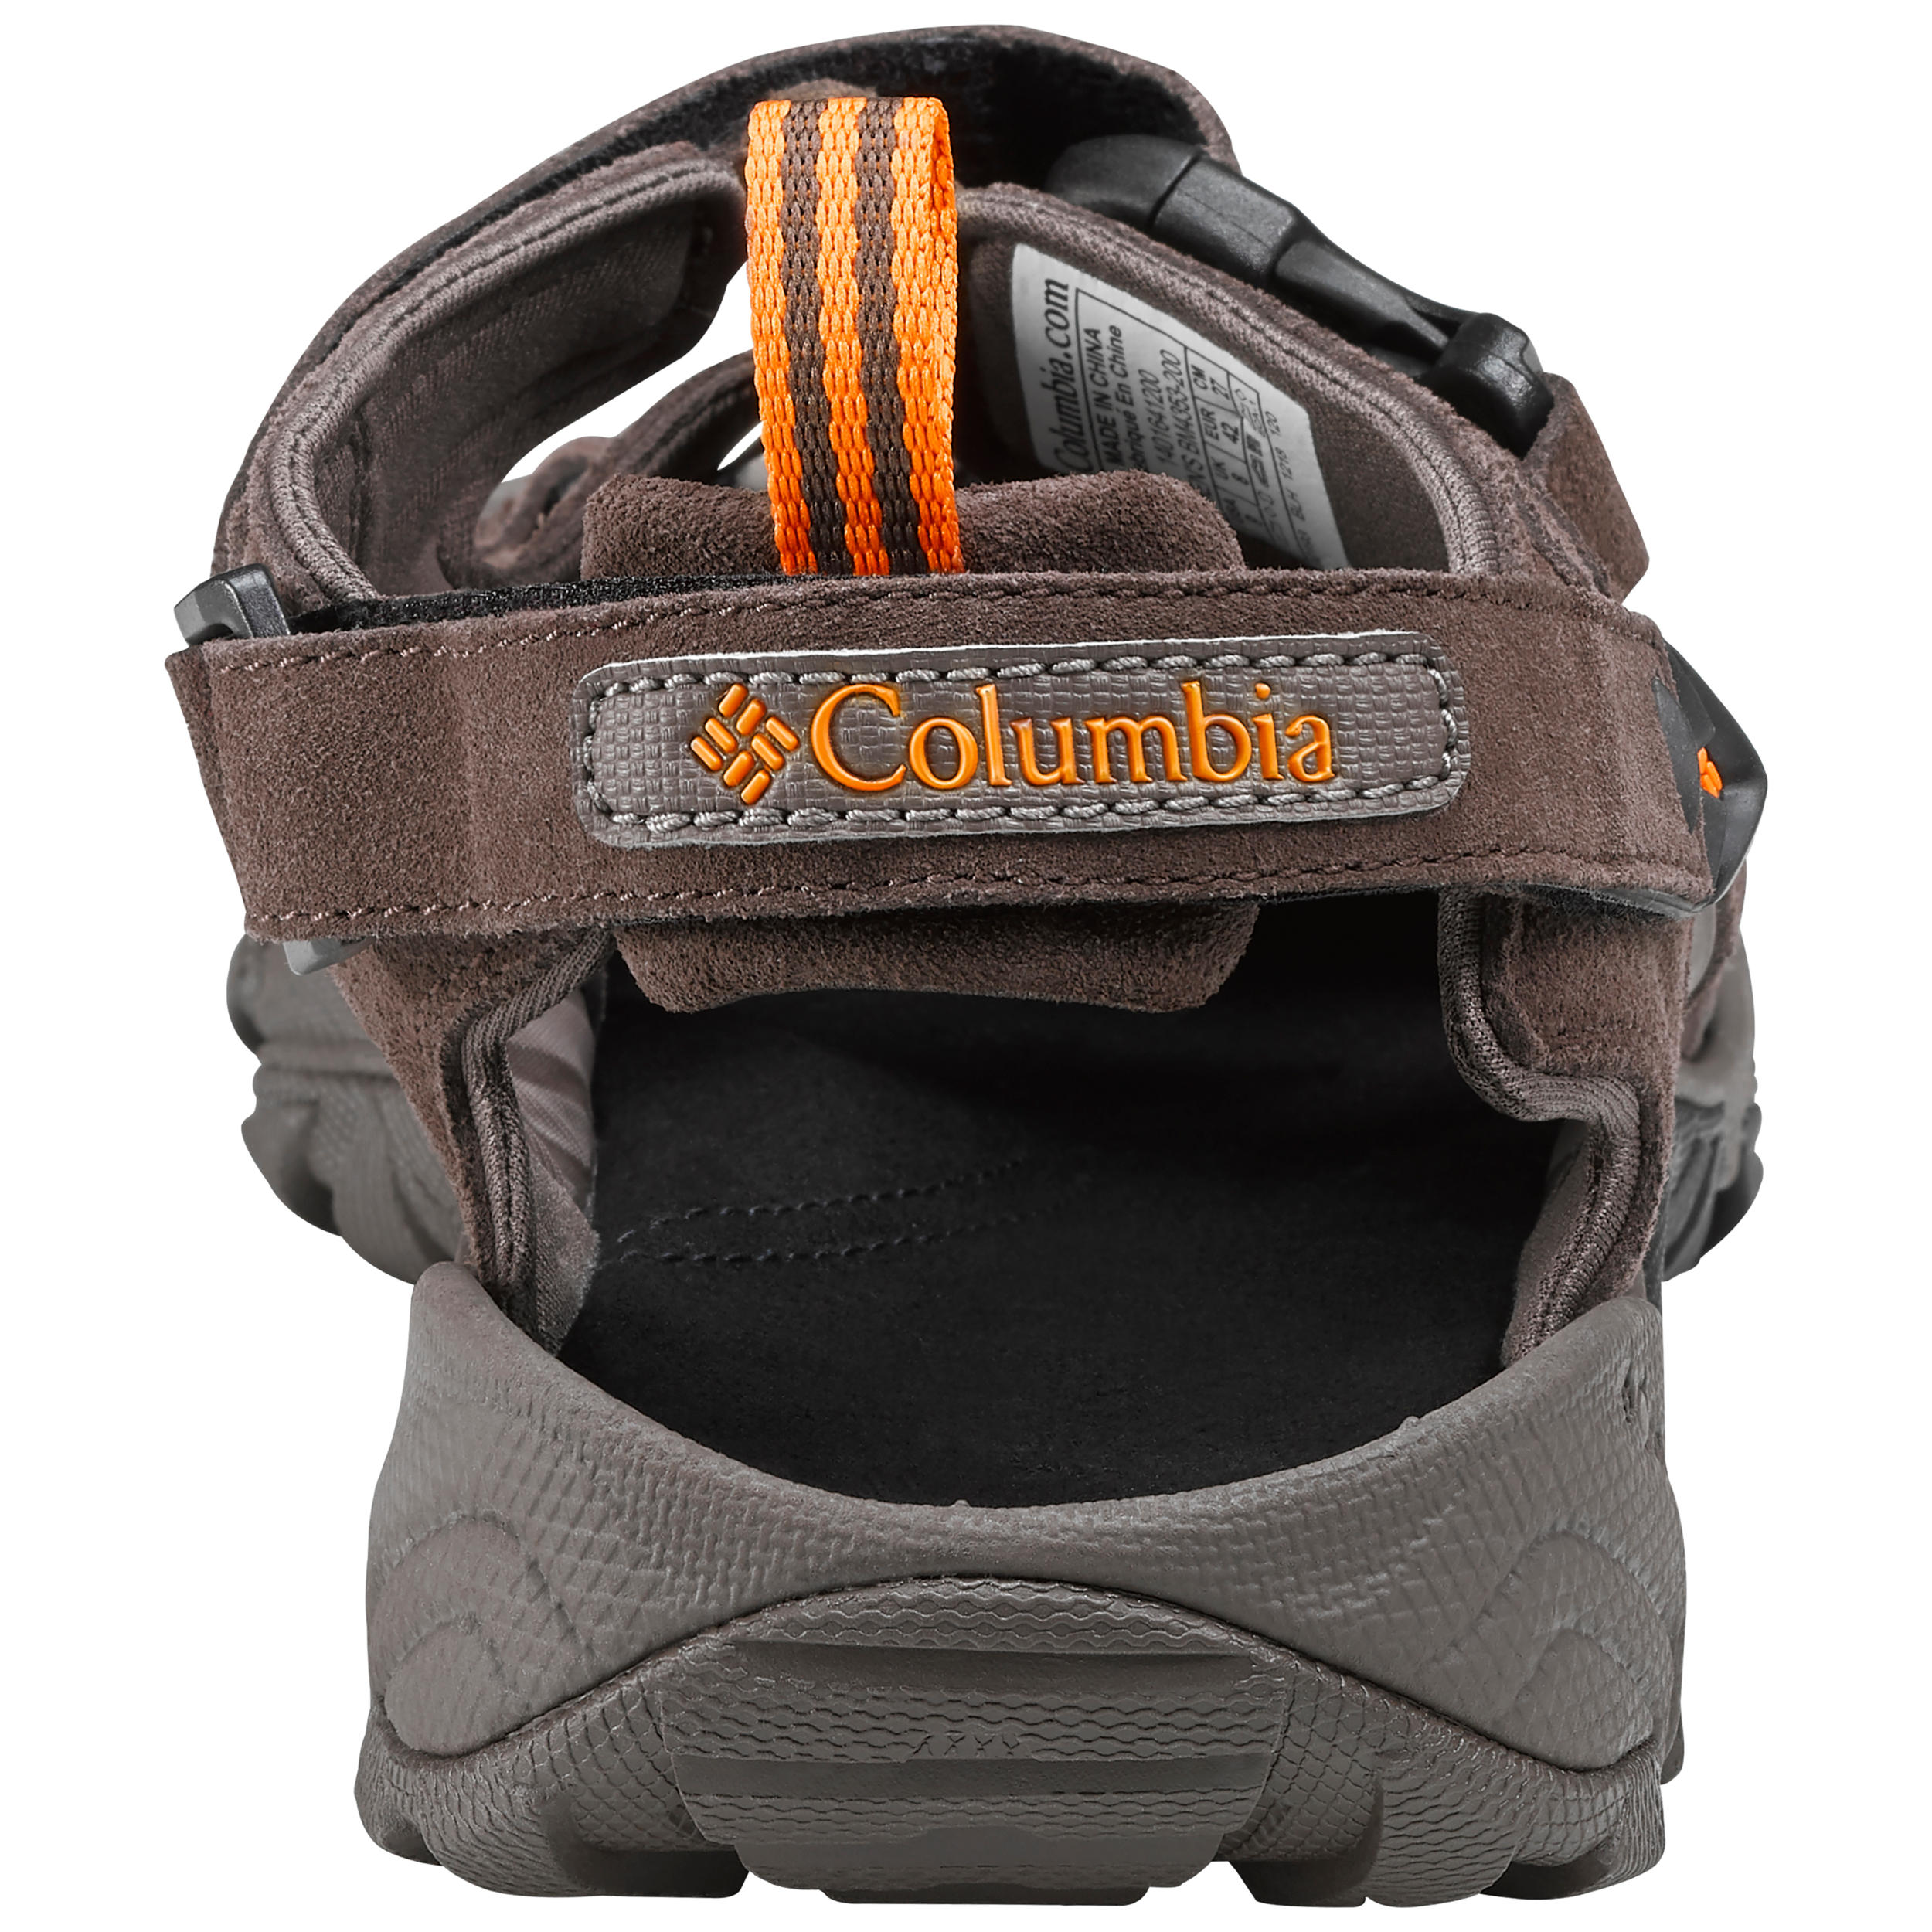 Men's walking sandals - Columbia Ridge Venture - Brown COLUMBIA | Decathlon